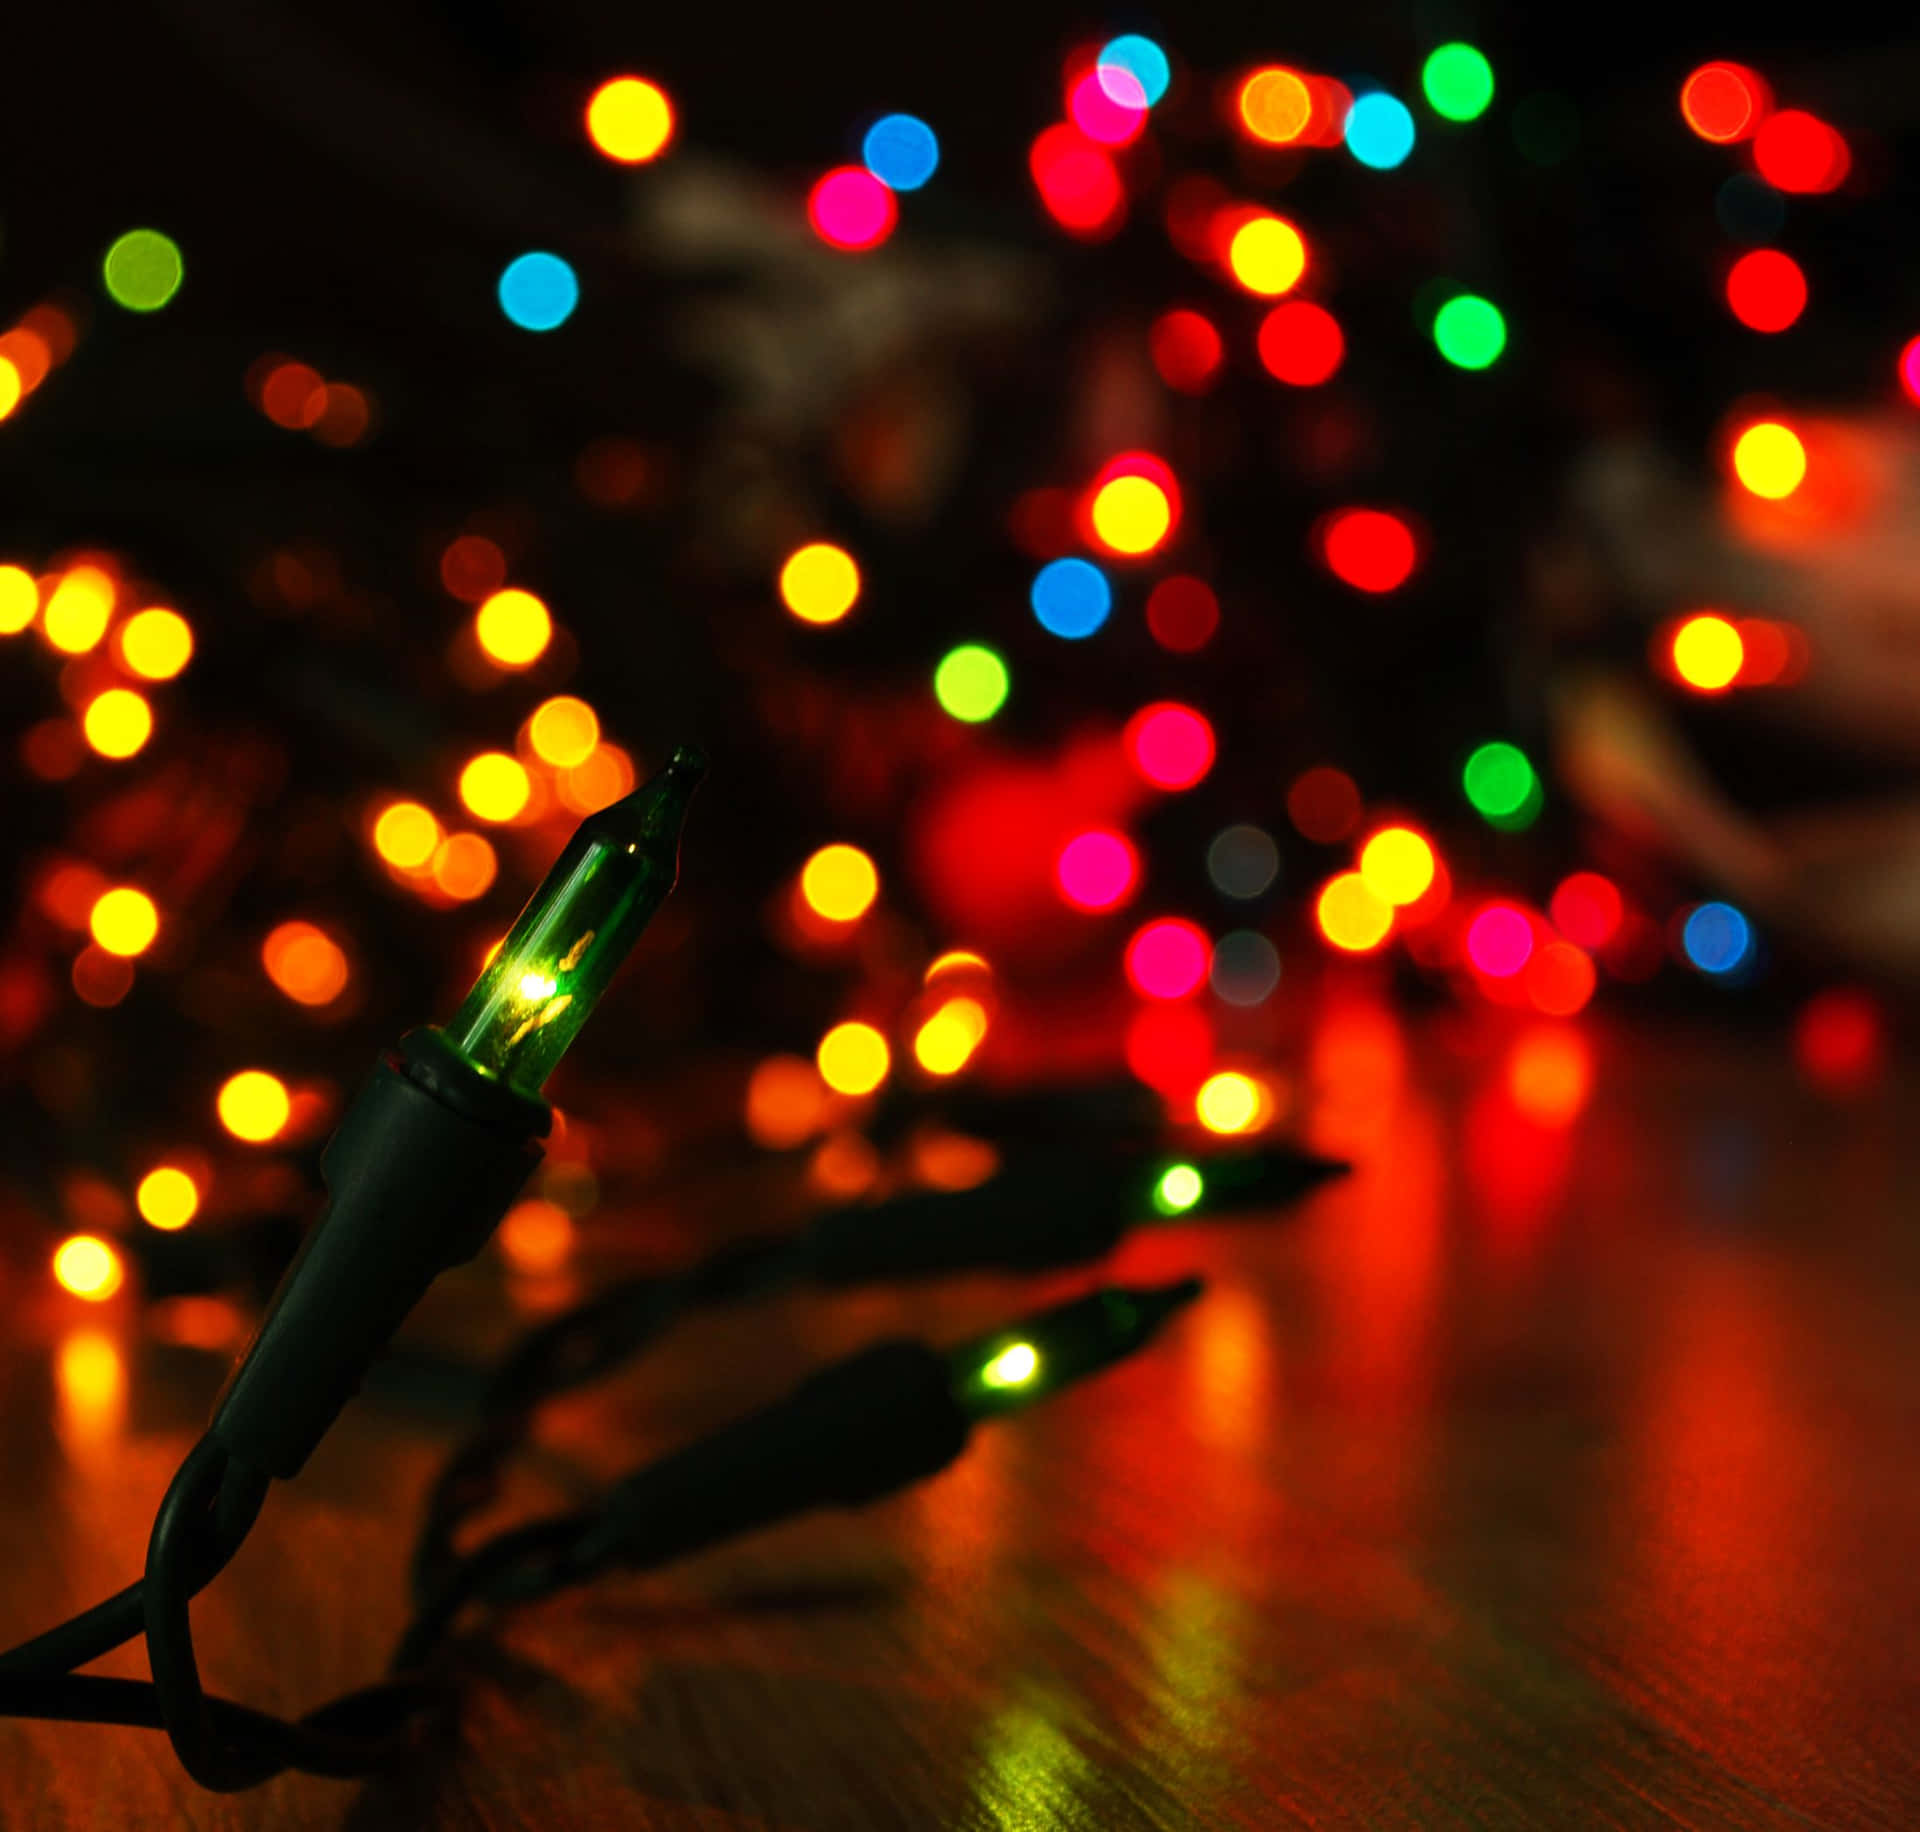 Bunteweihnachtsbeleuchtung Mit Farbenfrohen Lichtern Unscharfes Bild